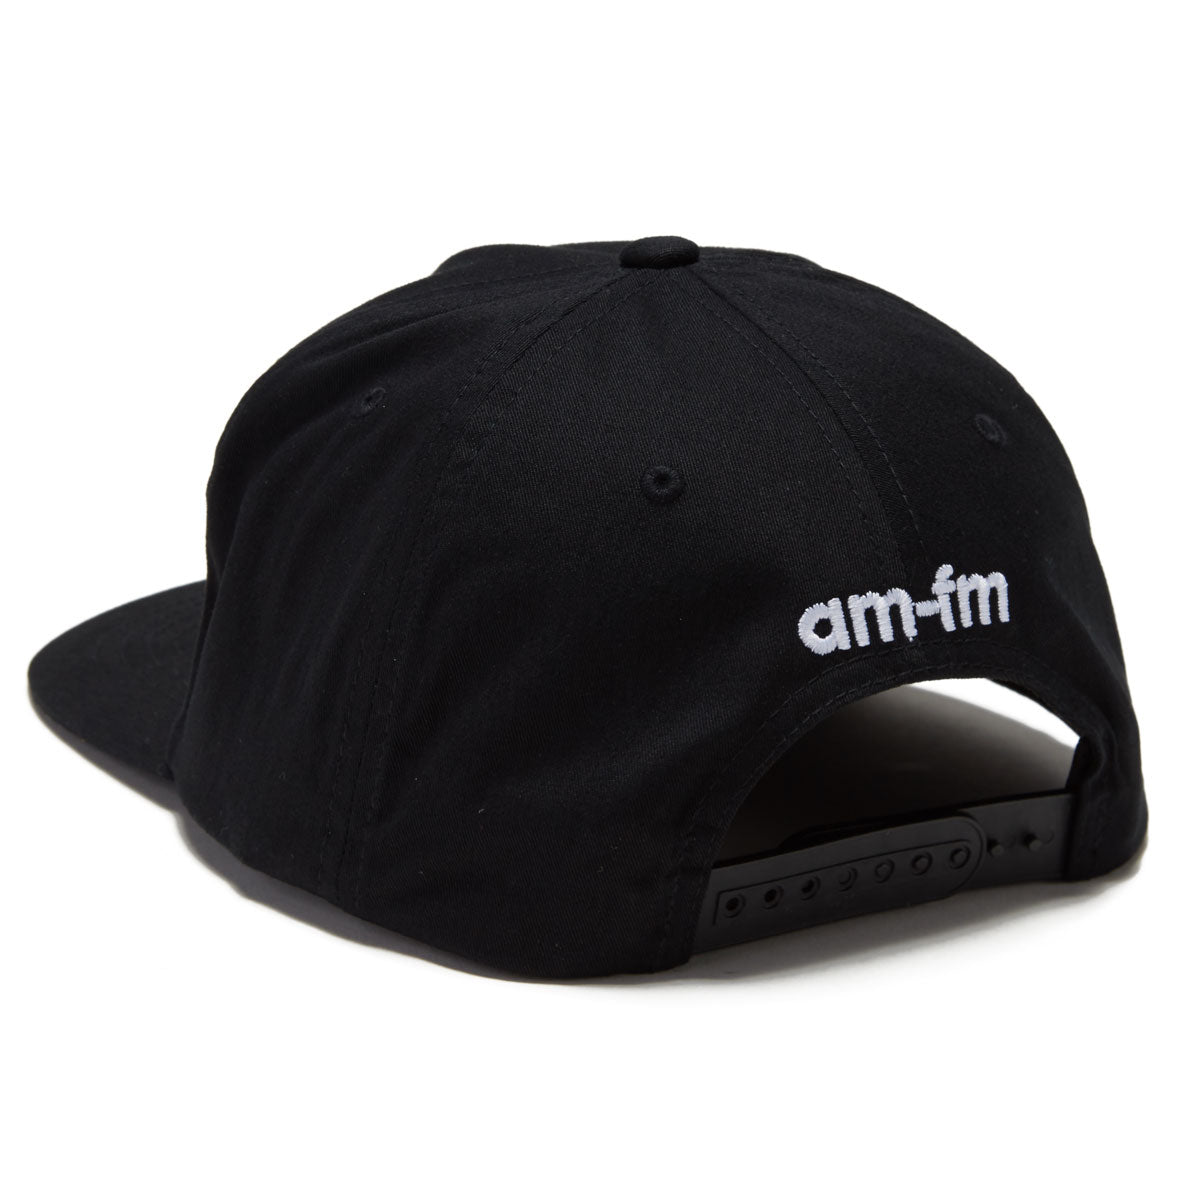 AM-FM HI8 Snapback Hat - Black image 2